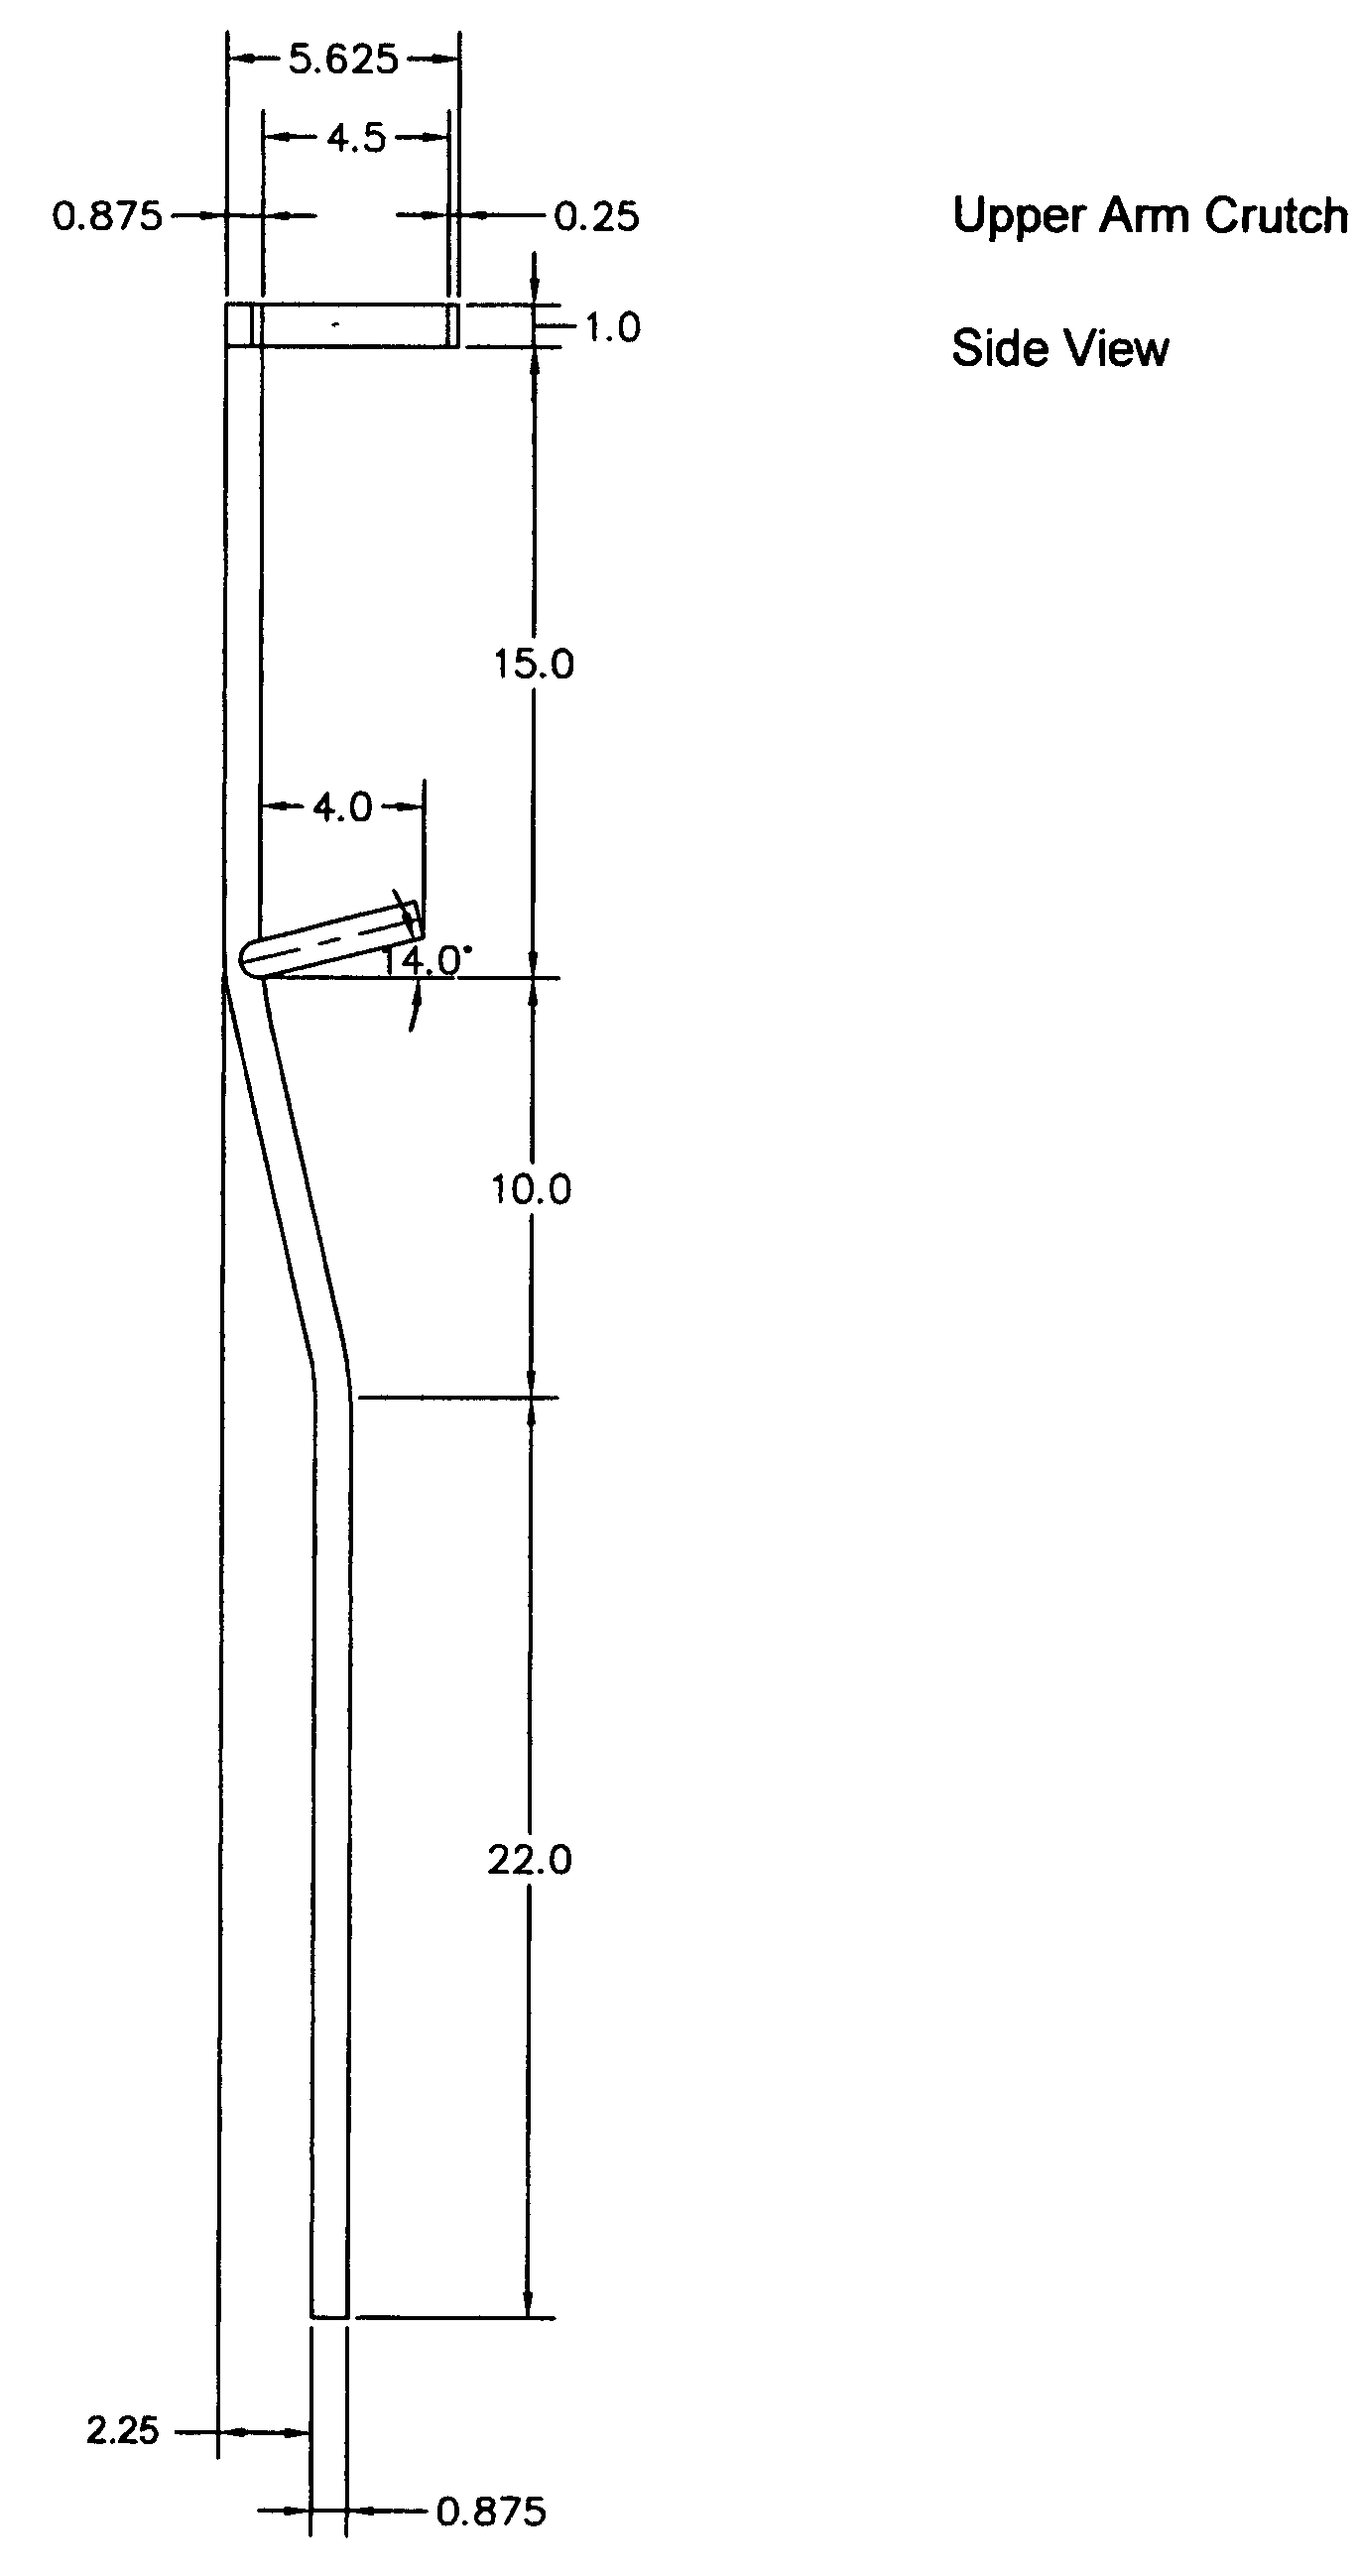 Upper arm crutch